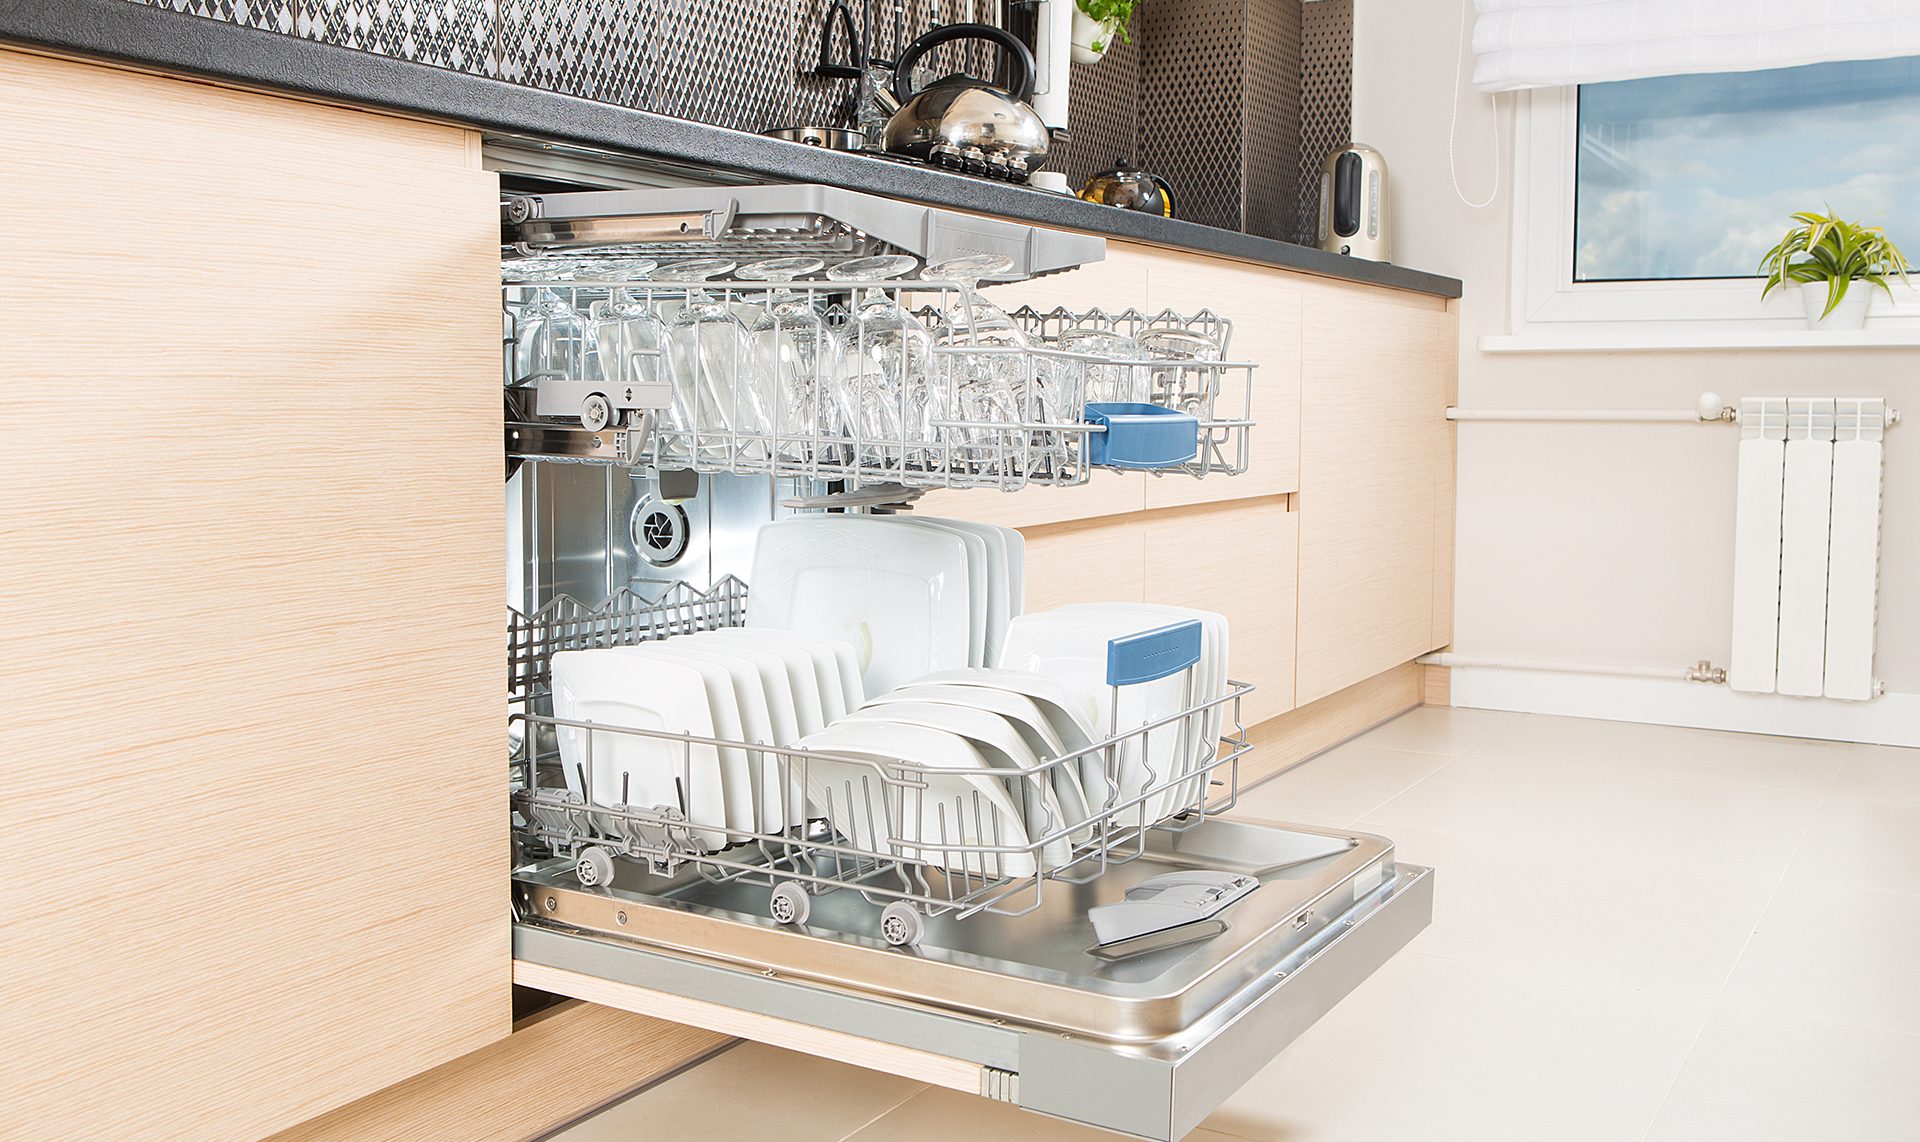 مشخصات فنی ماشین ظرفشویی رومیزی